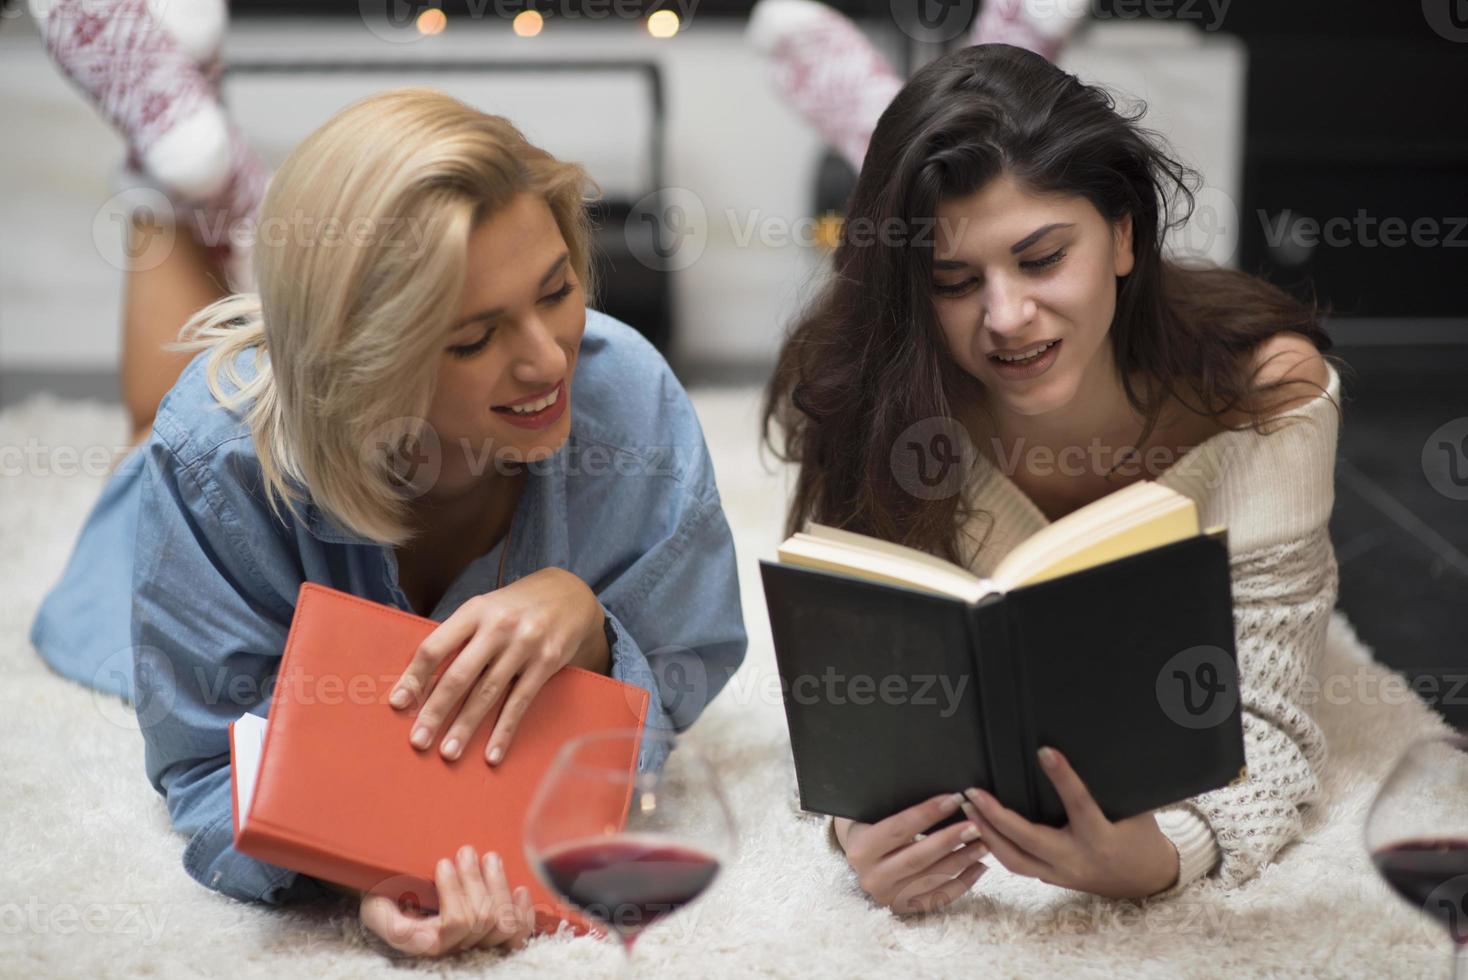 dos amigas leyendo un libro y bebiendo vino tinto junto a una chimenea. concepto de estilo de vida. foto